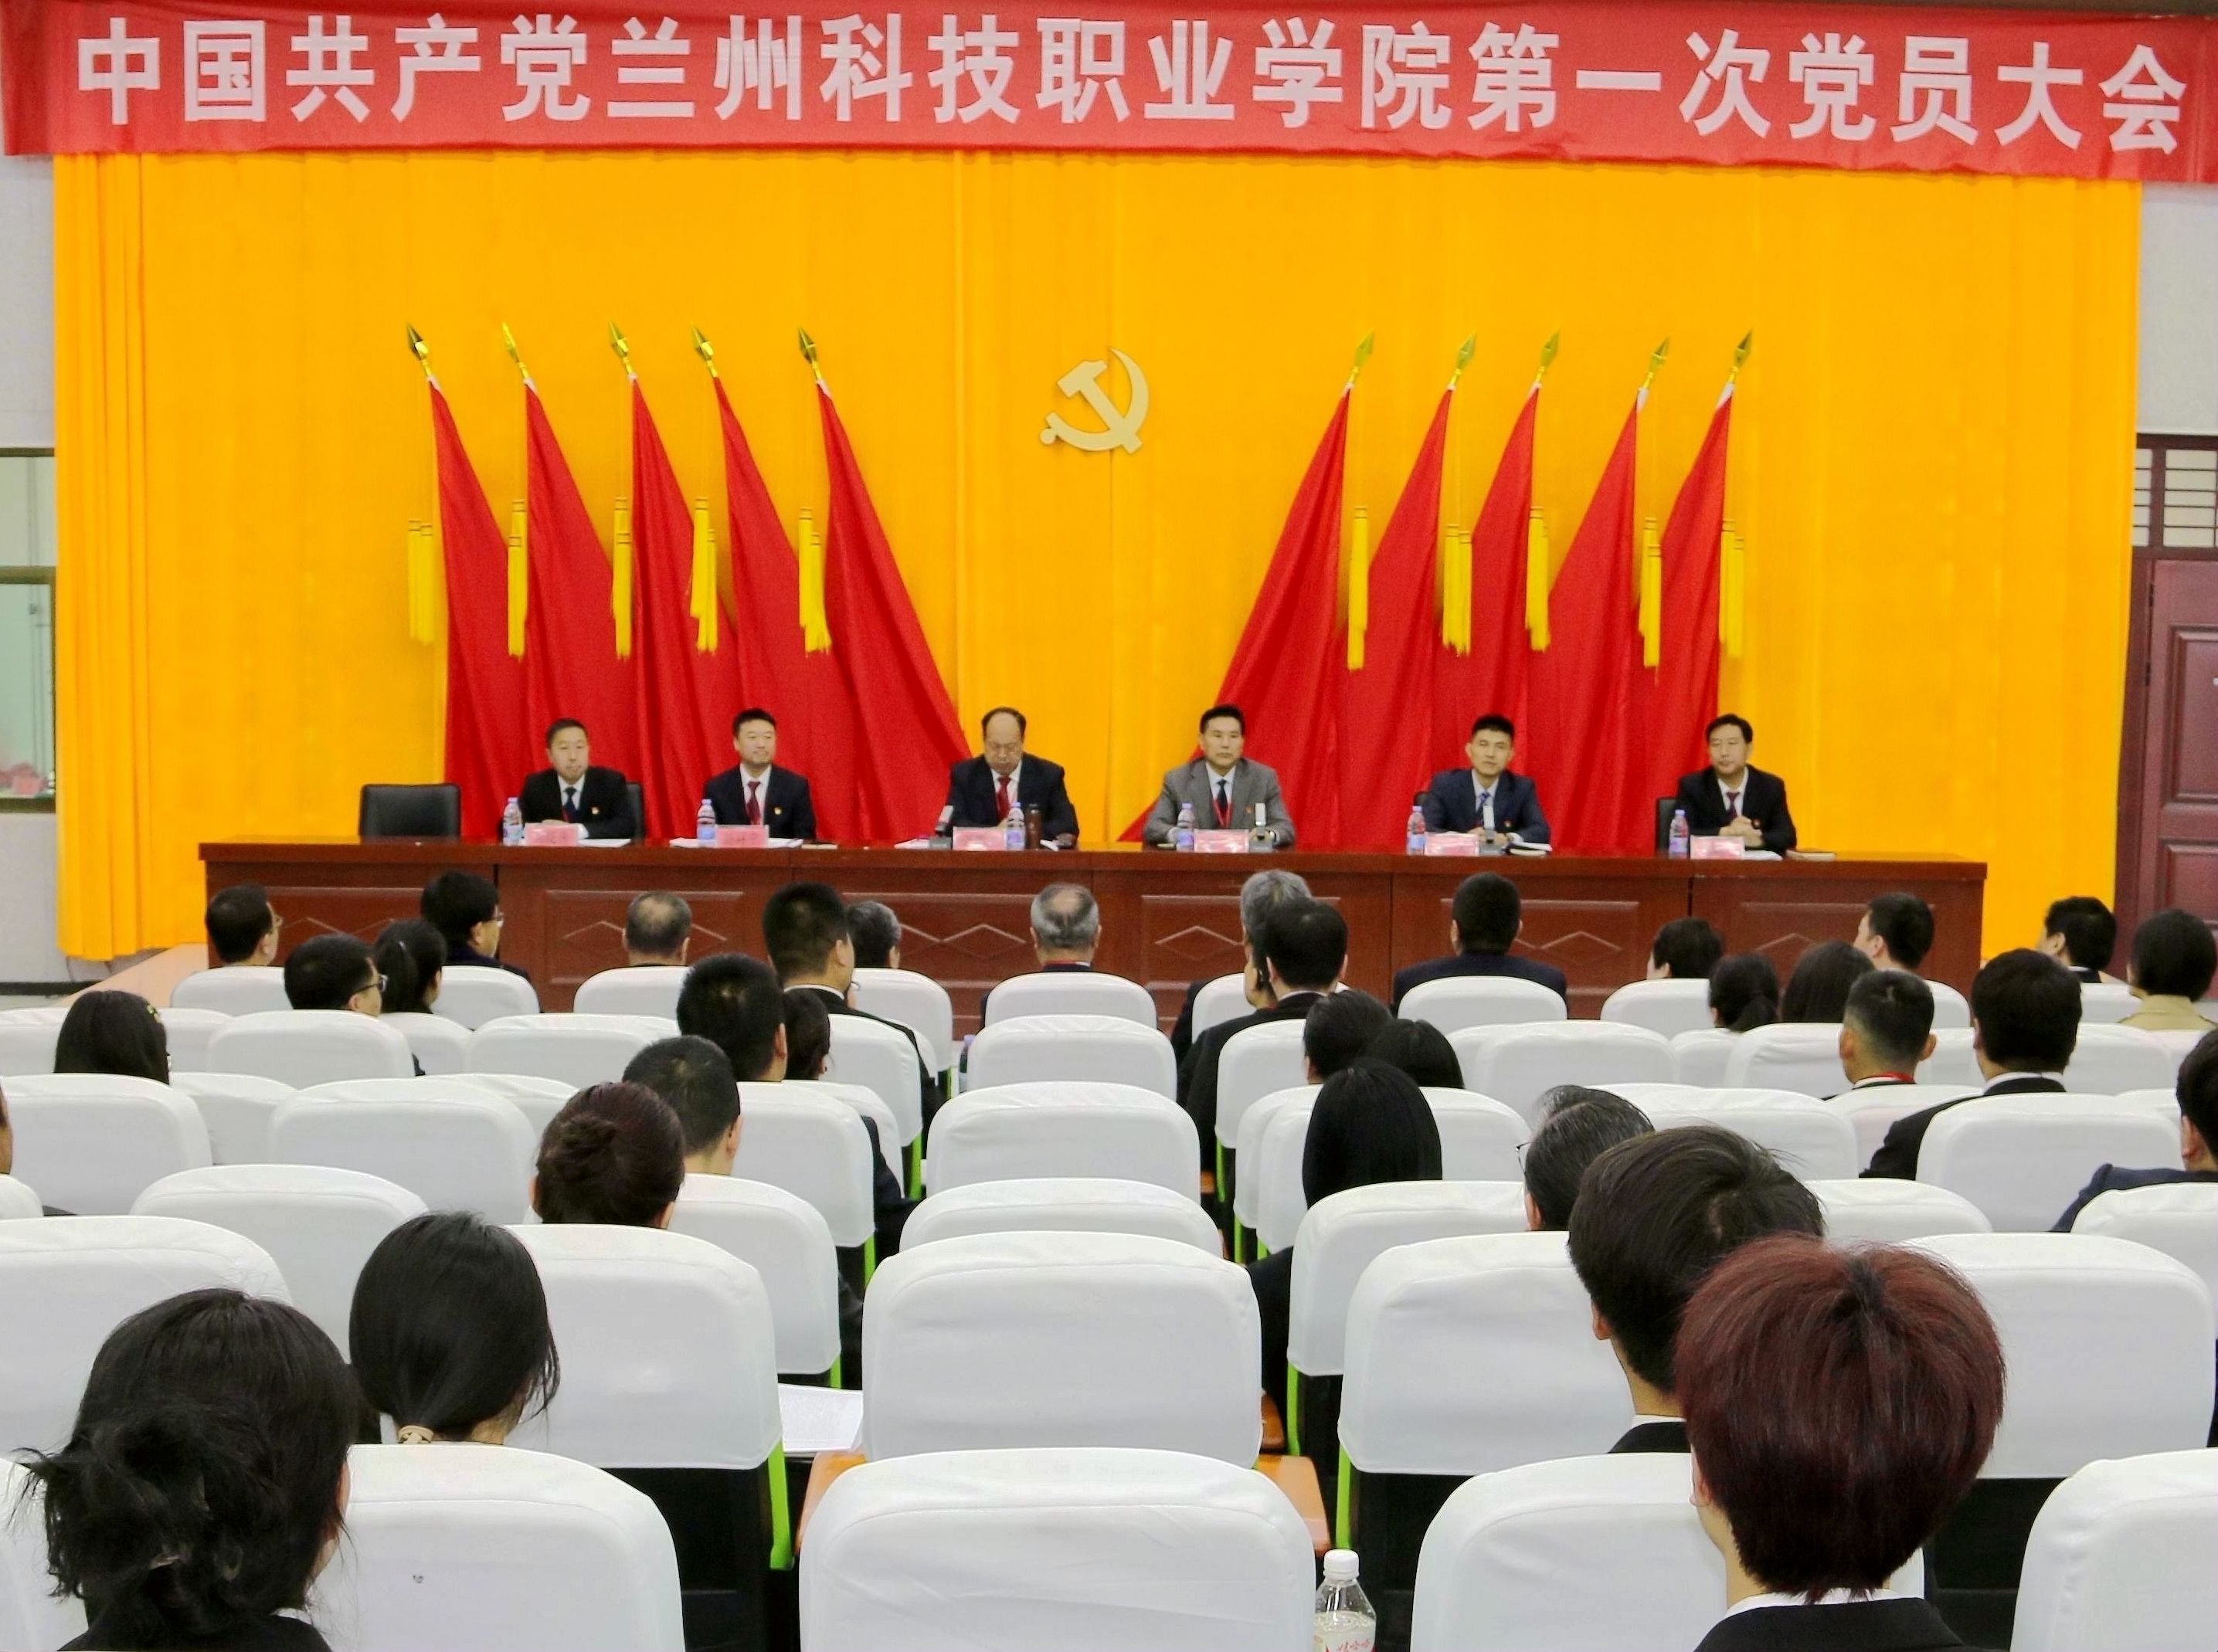 中国共产党兰州科技职业一局一结账2元斗地主第一次党员大会隆重开幕